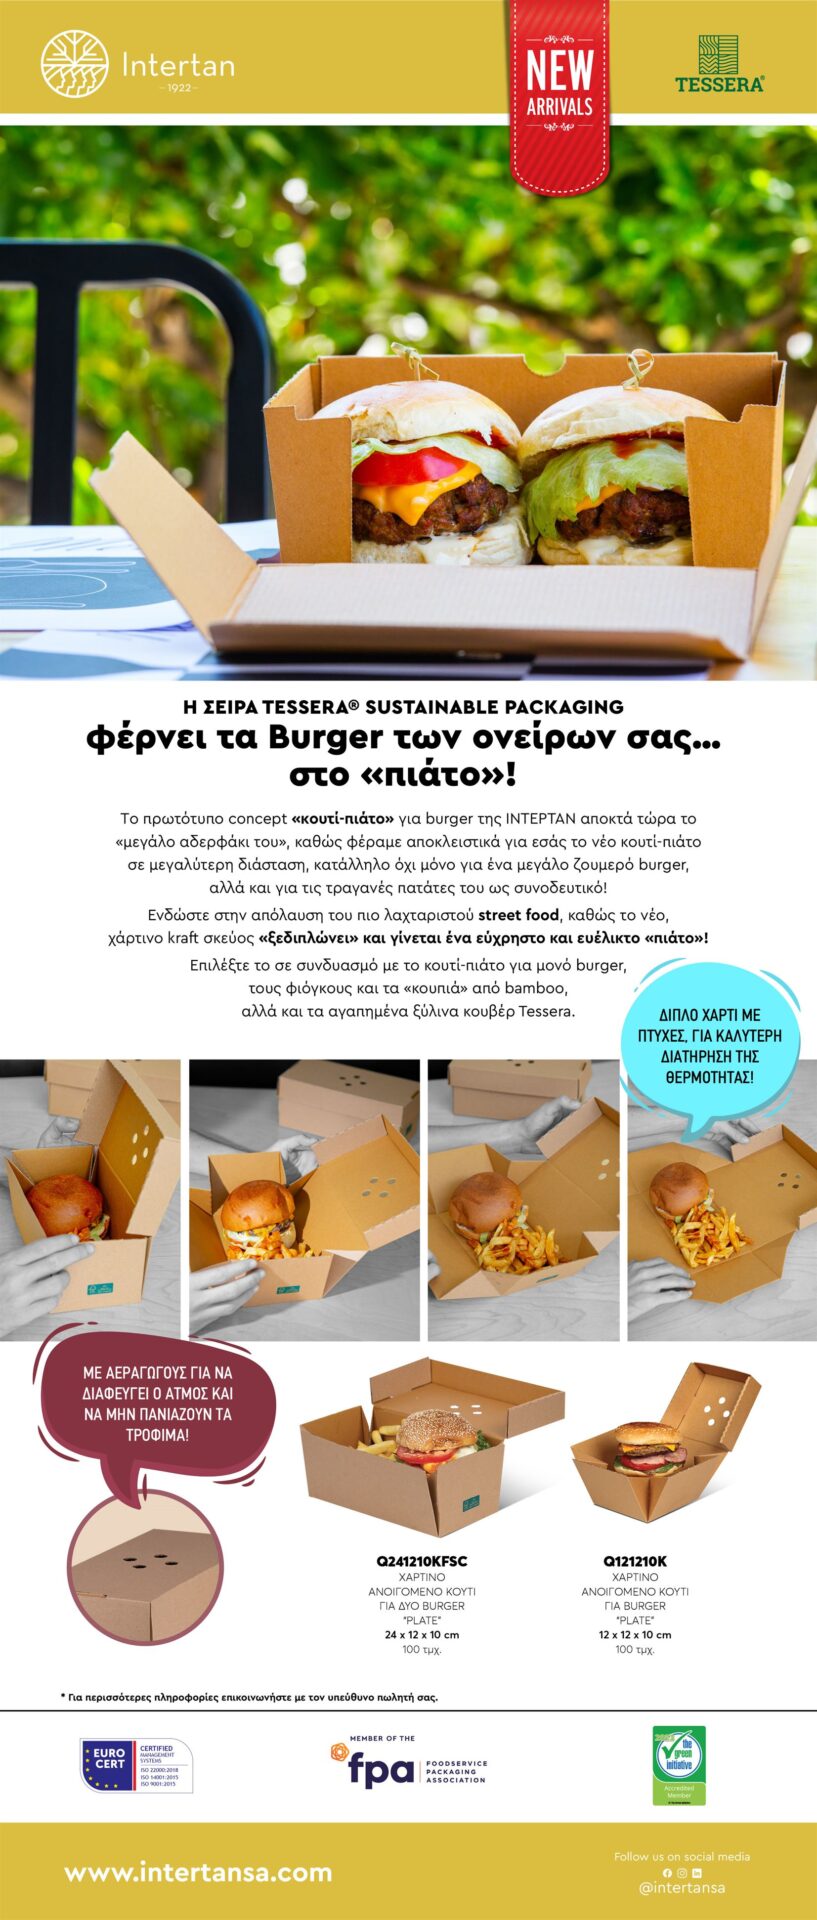 Νέο διπλό "κουτί-πιάτο" για burger TESSERA Newsletter | ΙΝΤΕΡΤΑΝ Α.Ε.